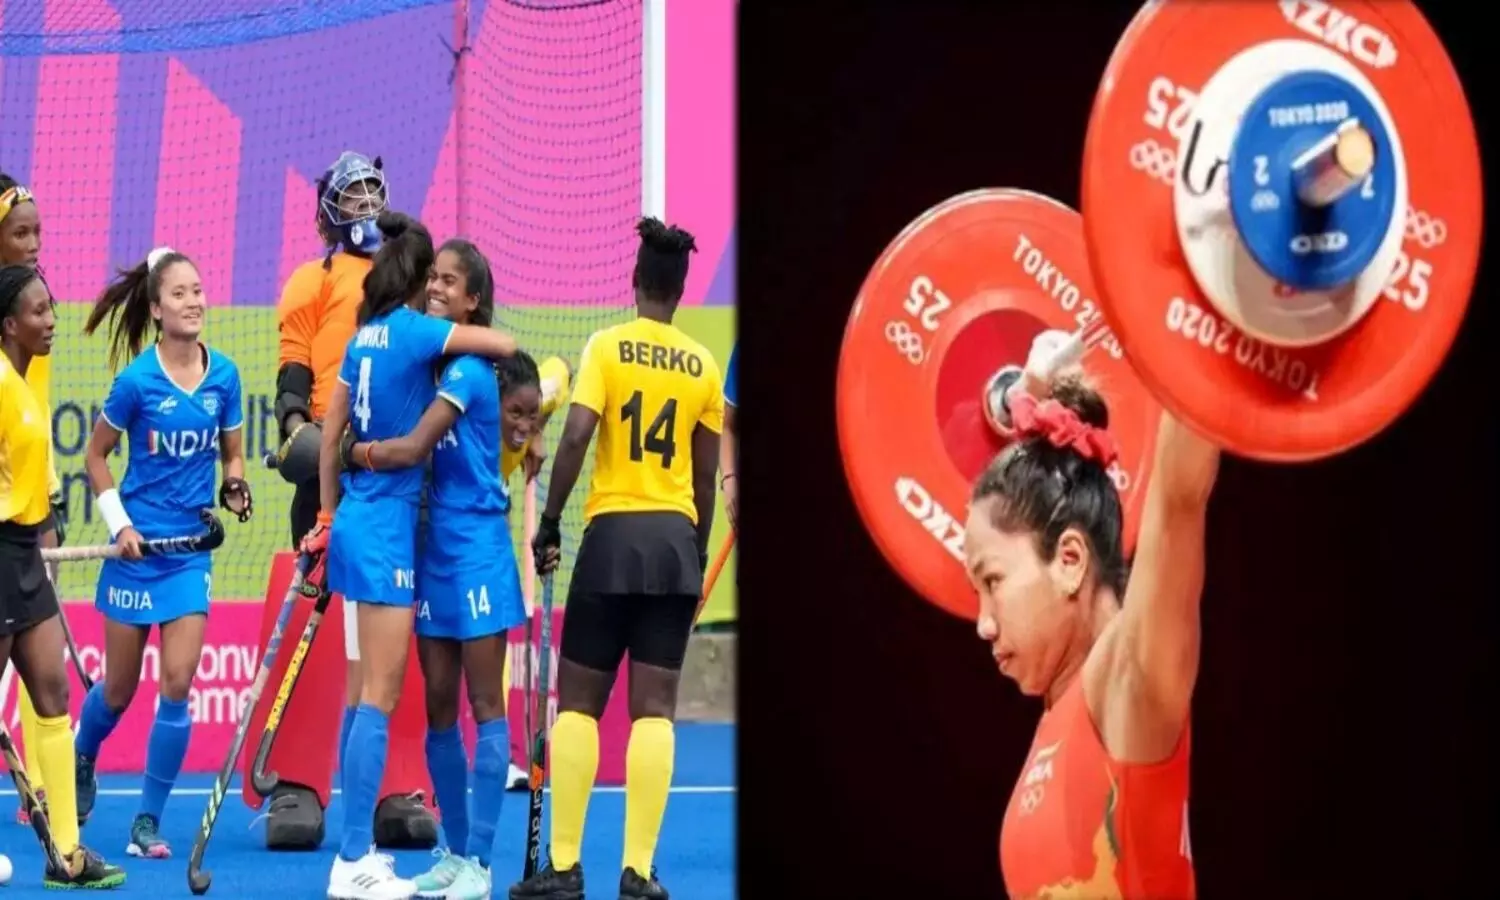 Commonwealth Games 2022: मीराबाई चानू से लेकर महिला हॉकी टीम तक, जाने कॉमनवेल्थ गेम्स में भारत का आज का शेड्यूल